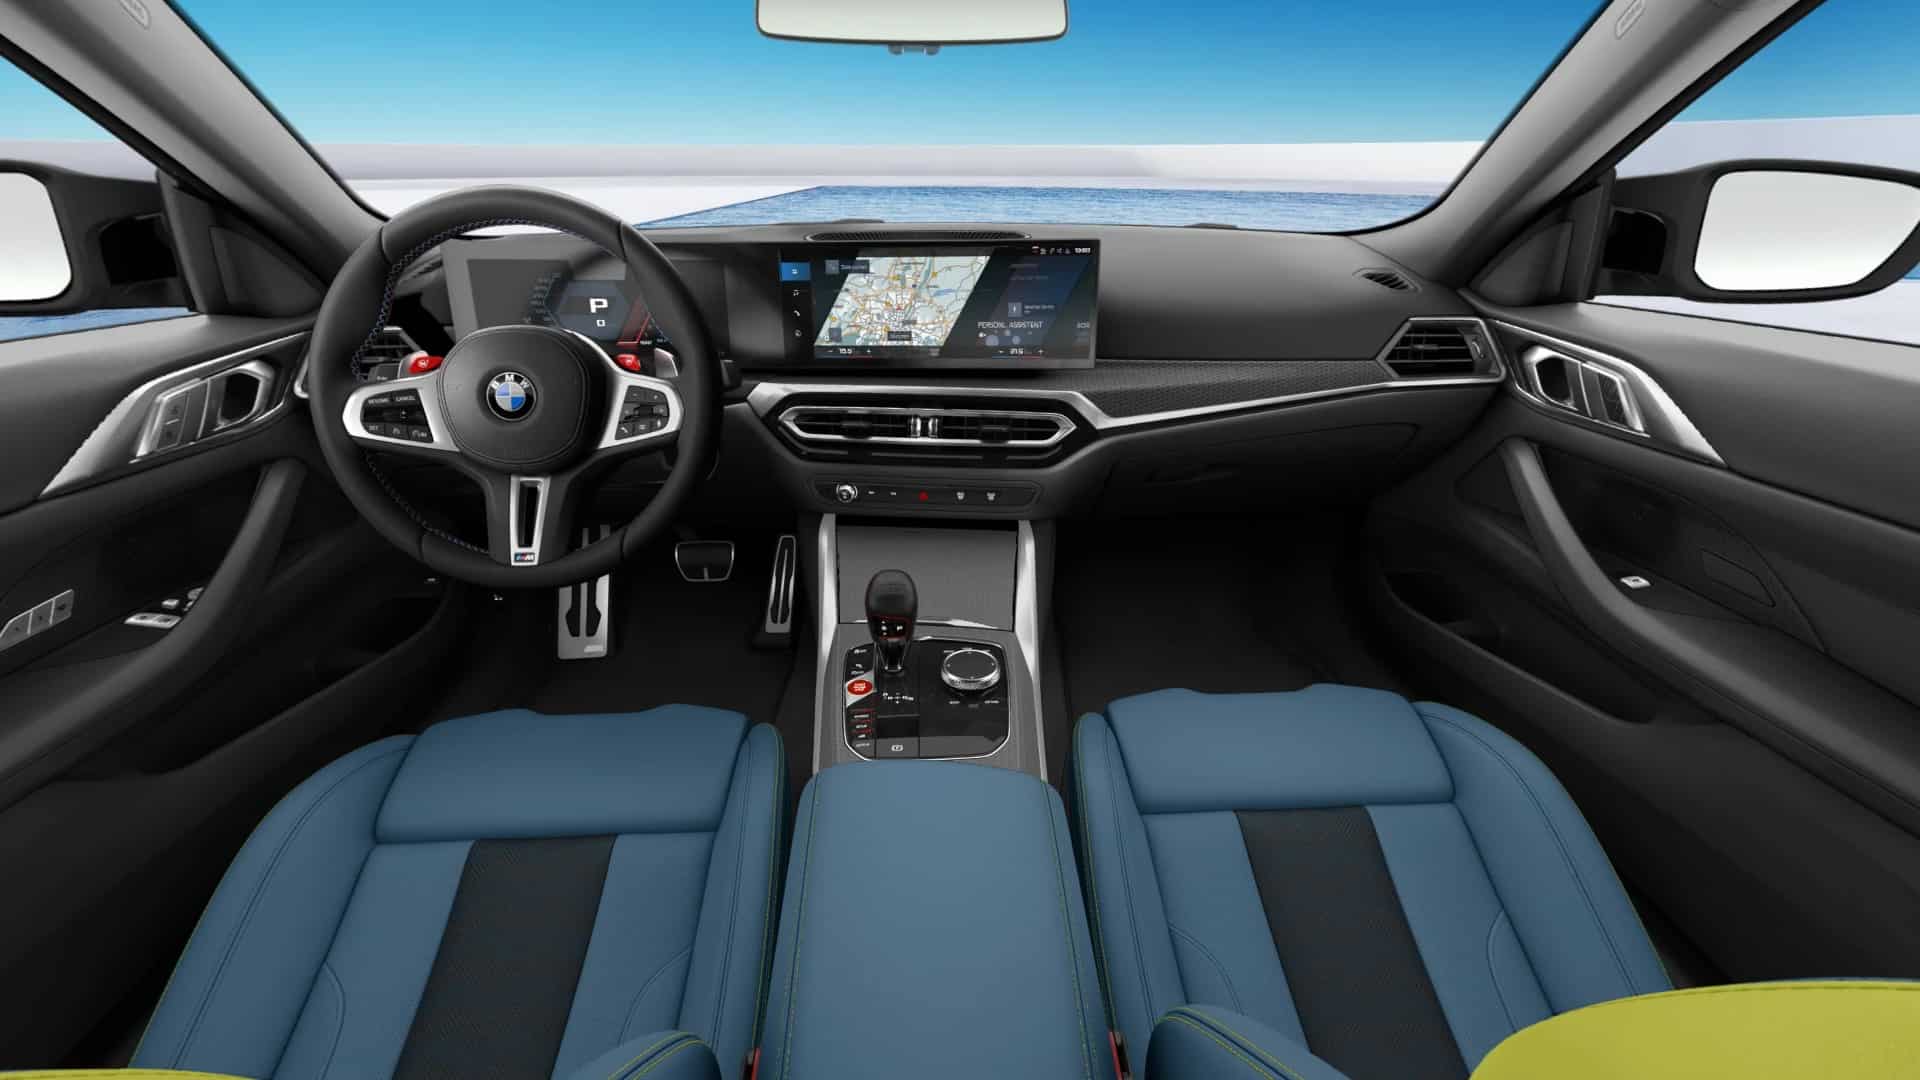 Phác họa thiết kế BMW 4-Series mới sắp về Việt Nam - Ảnh 4.